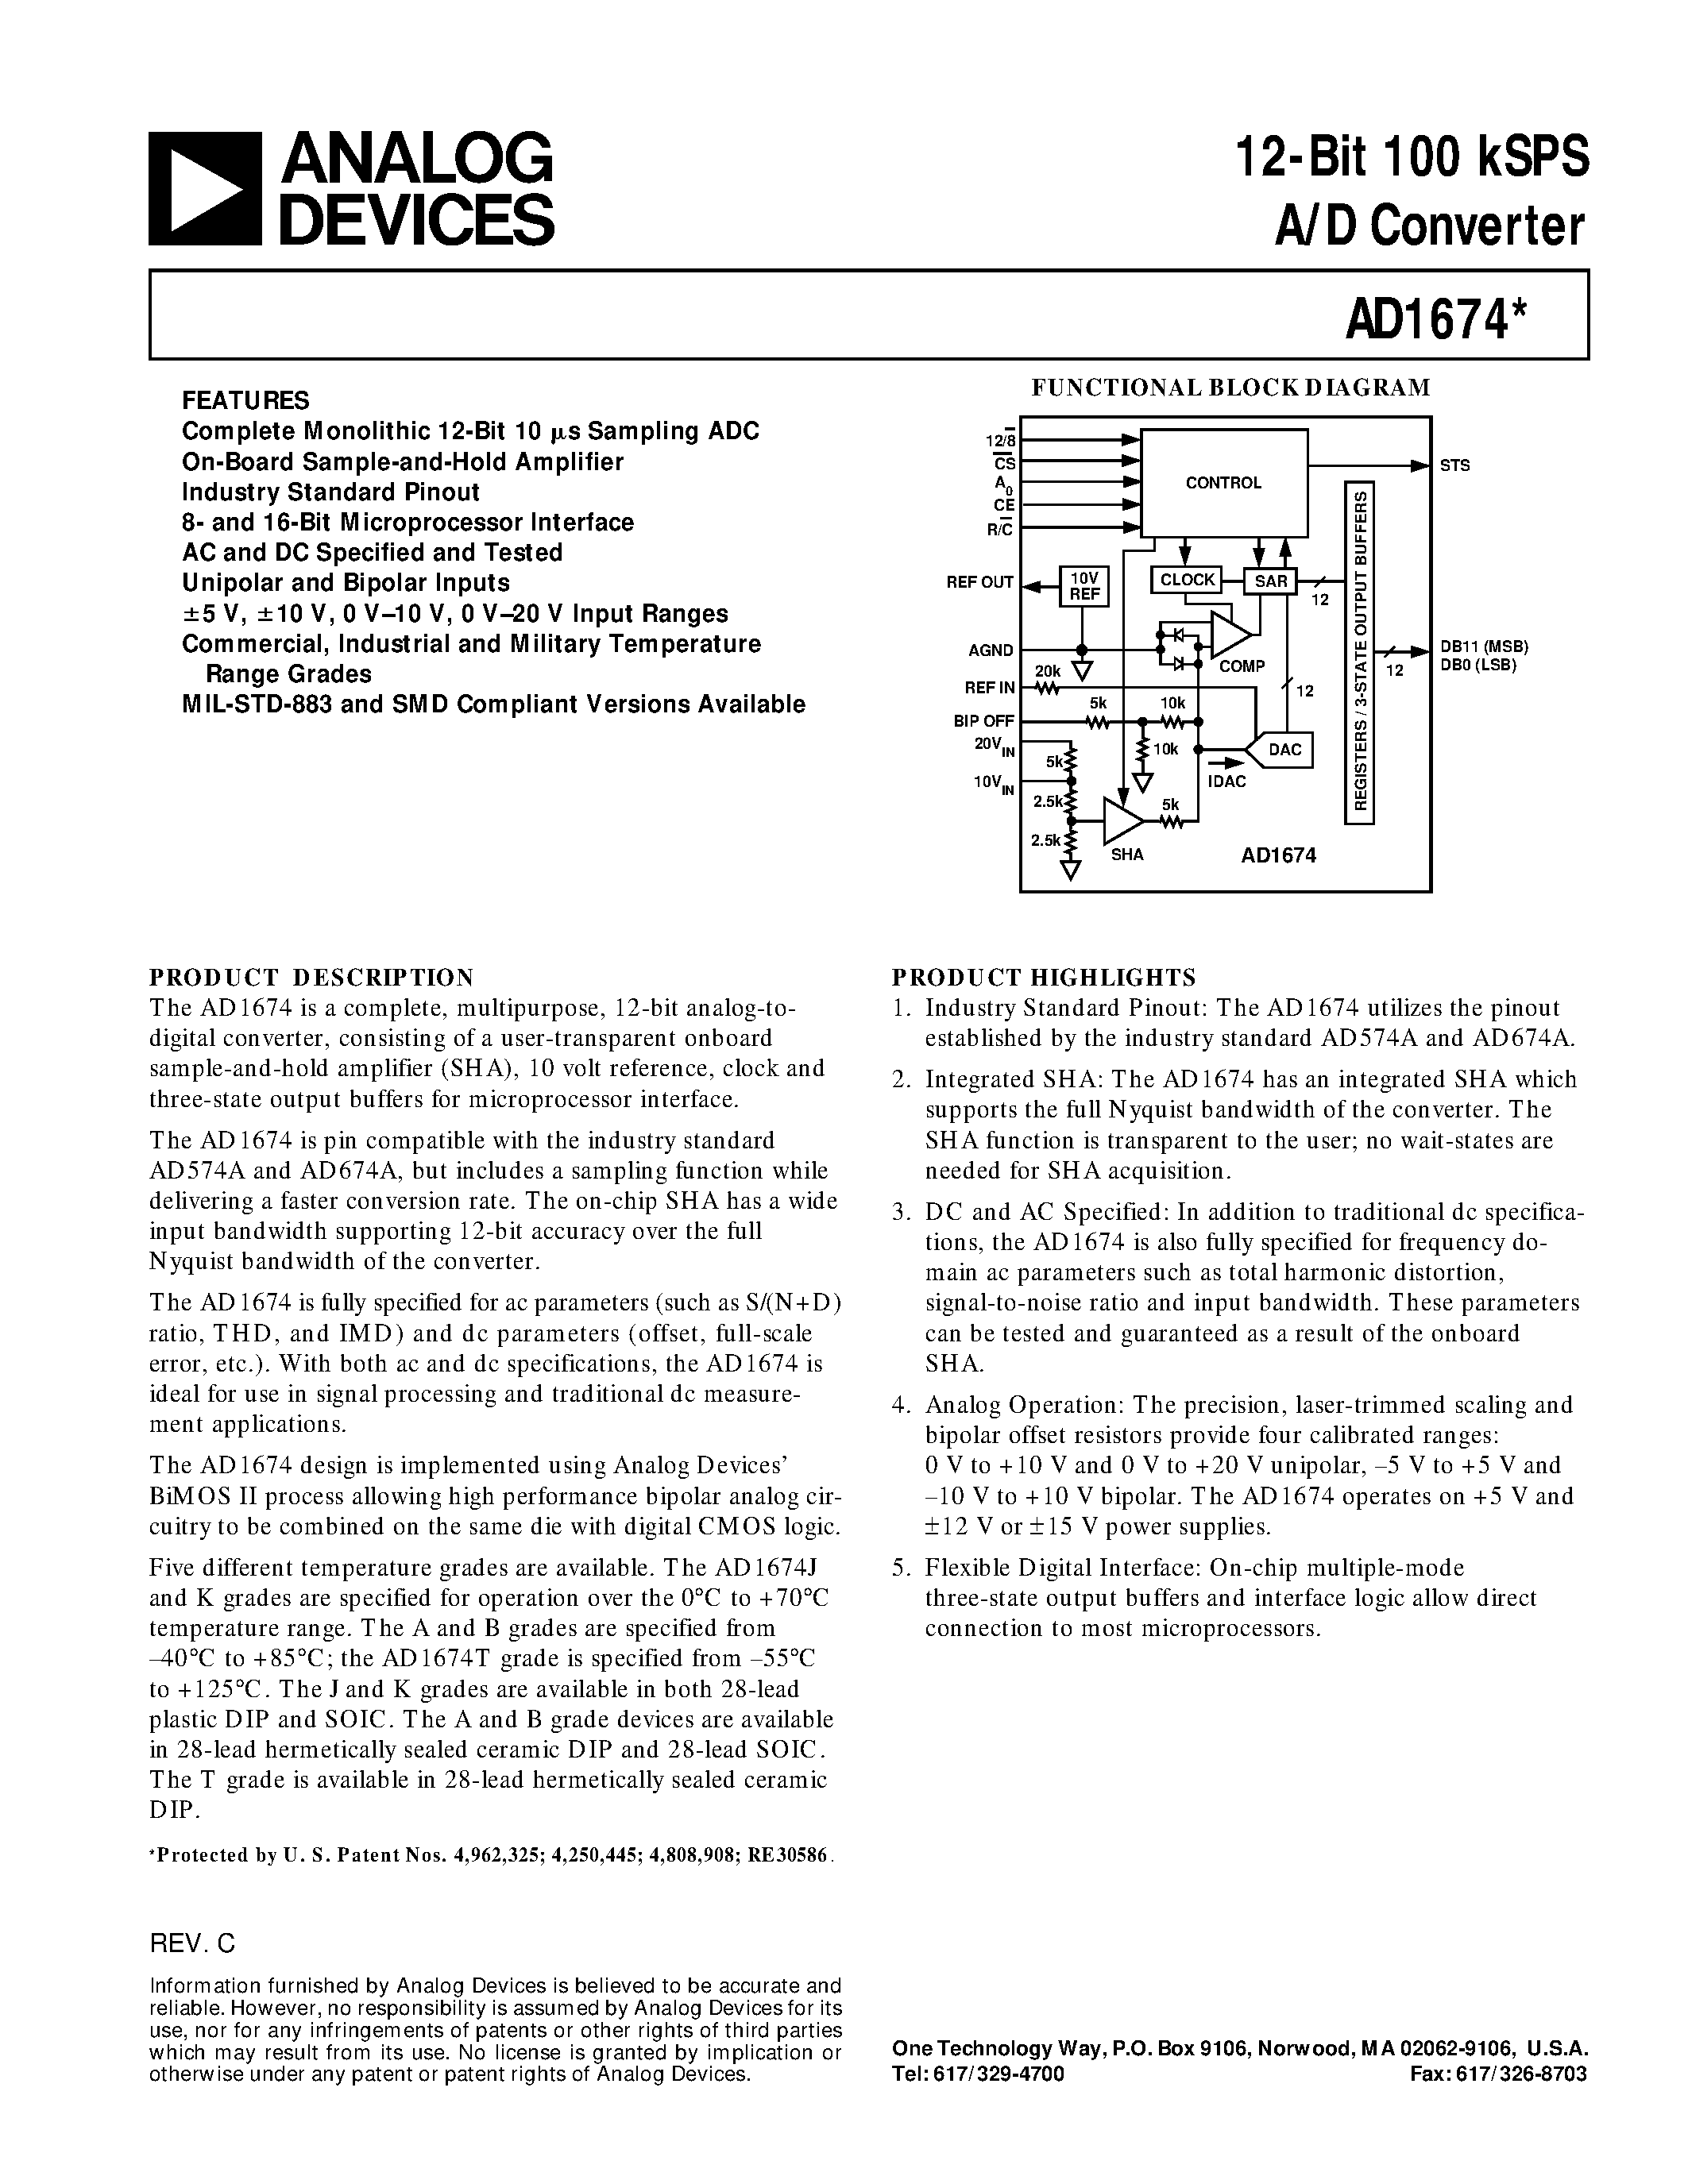 Даташит AD1674J - 12-Bit 100 kSPS A/D Converter страница 1